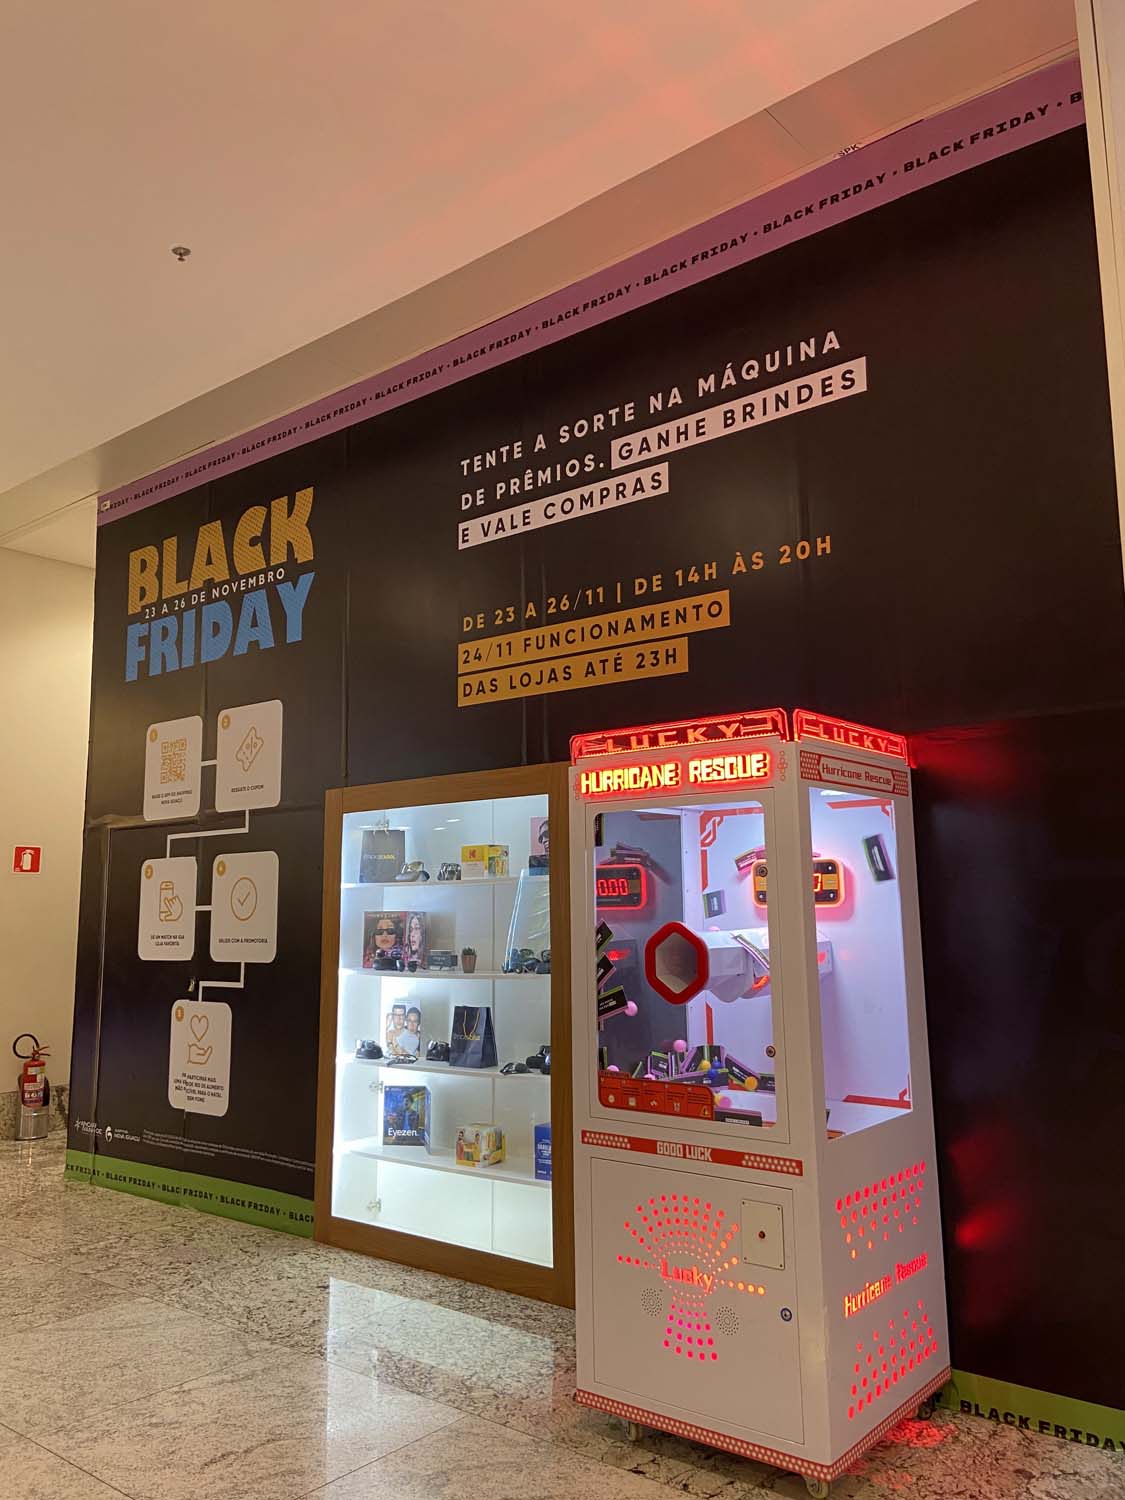 Shopping Nova Iguaçu terá cabine de prêmios na Black Friday